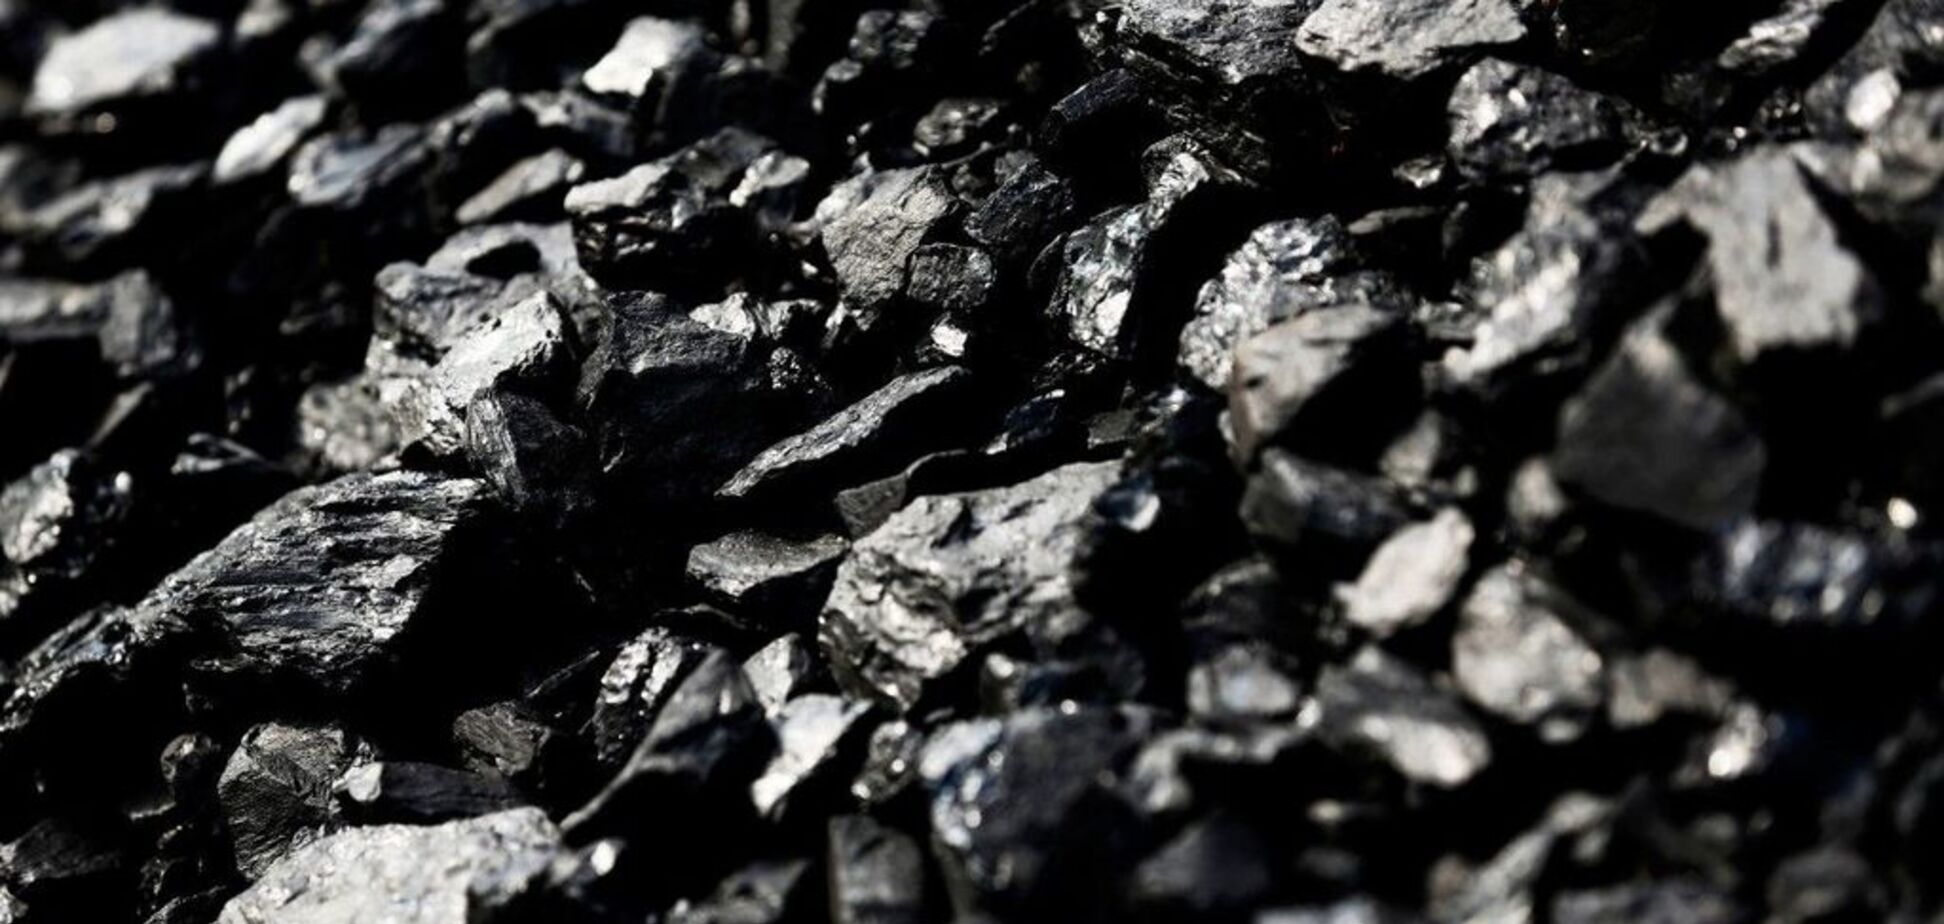 Гройсман підвищить енергонезалежність країни пріоритетом українського вугілля